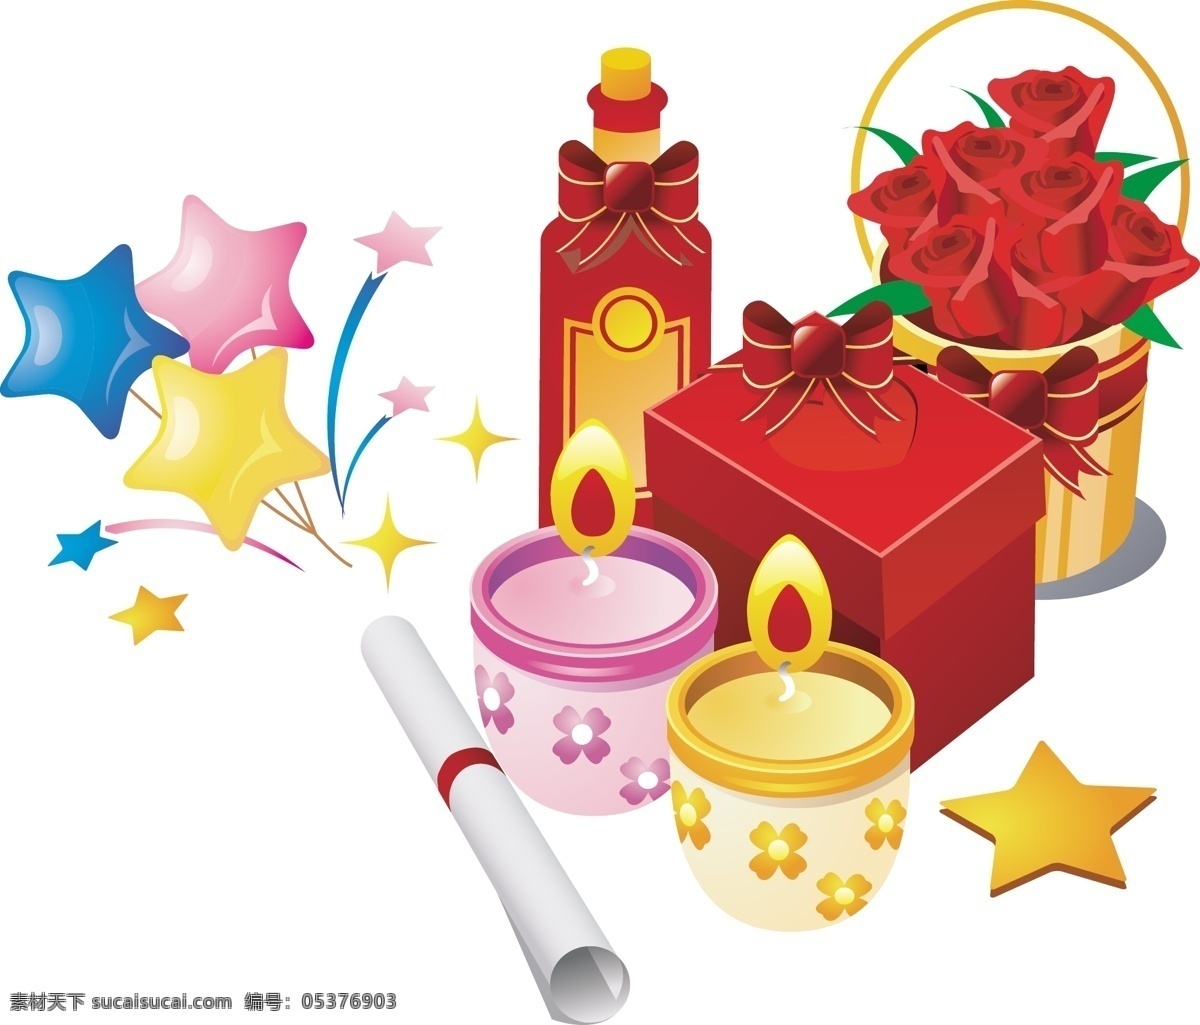 韩国 情人节 庆祝 矢量图 蜡烛 玫瑰花 模板 设计稿 庆祝情人节 节日大全 源文件 节日素材